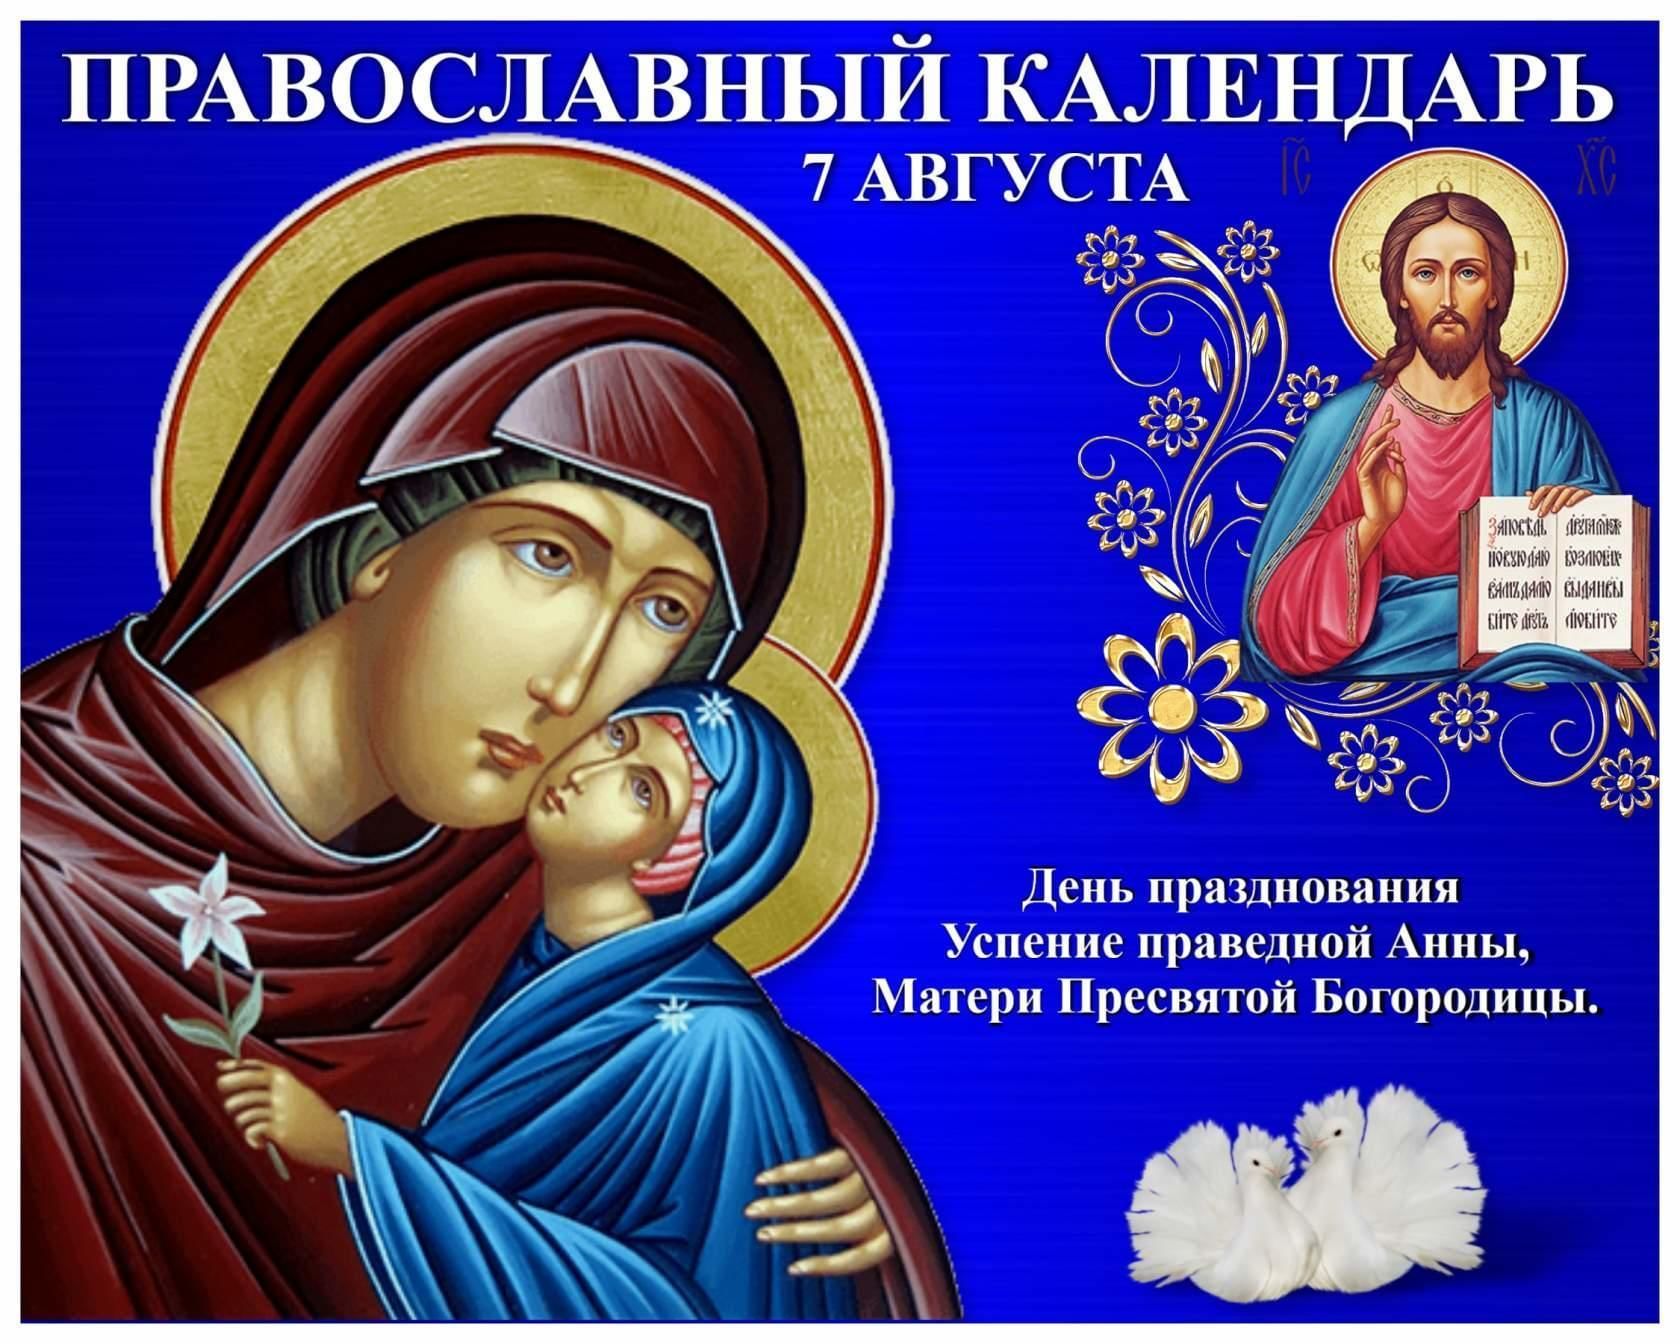 Успение праведной Анны матери Богородицы 7 августа